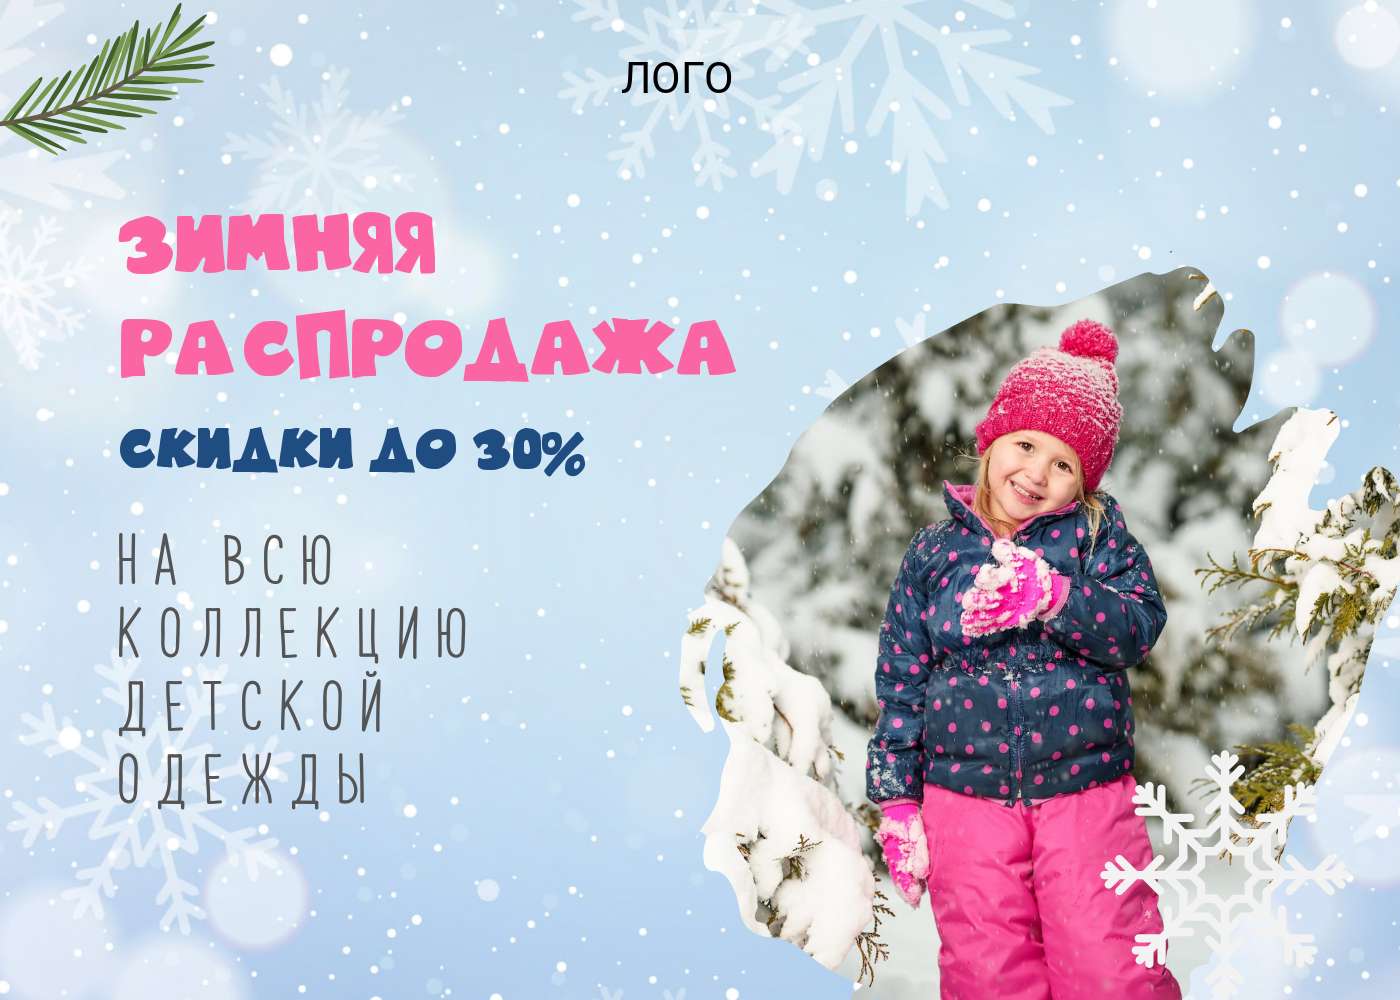 Новогодняя публикация с фото маленькой девочки в зимнем костюме и шапочке на фоне снегопада